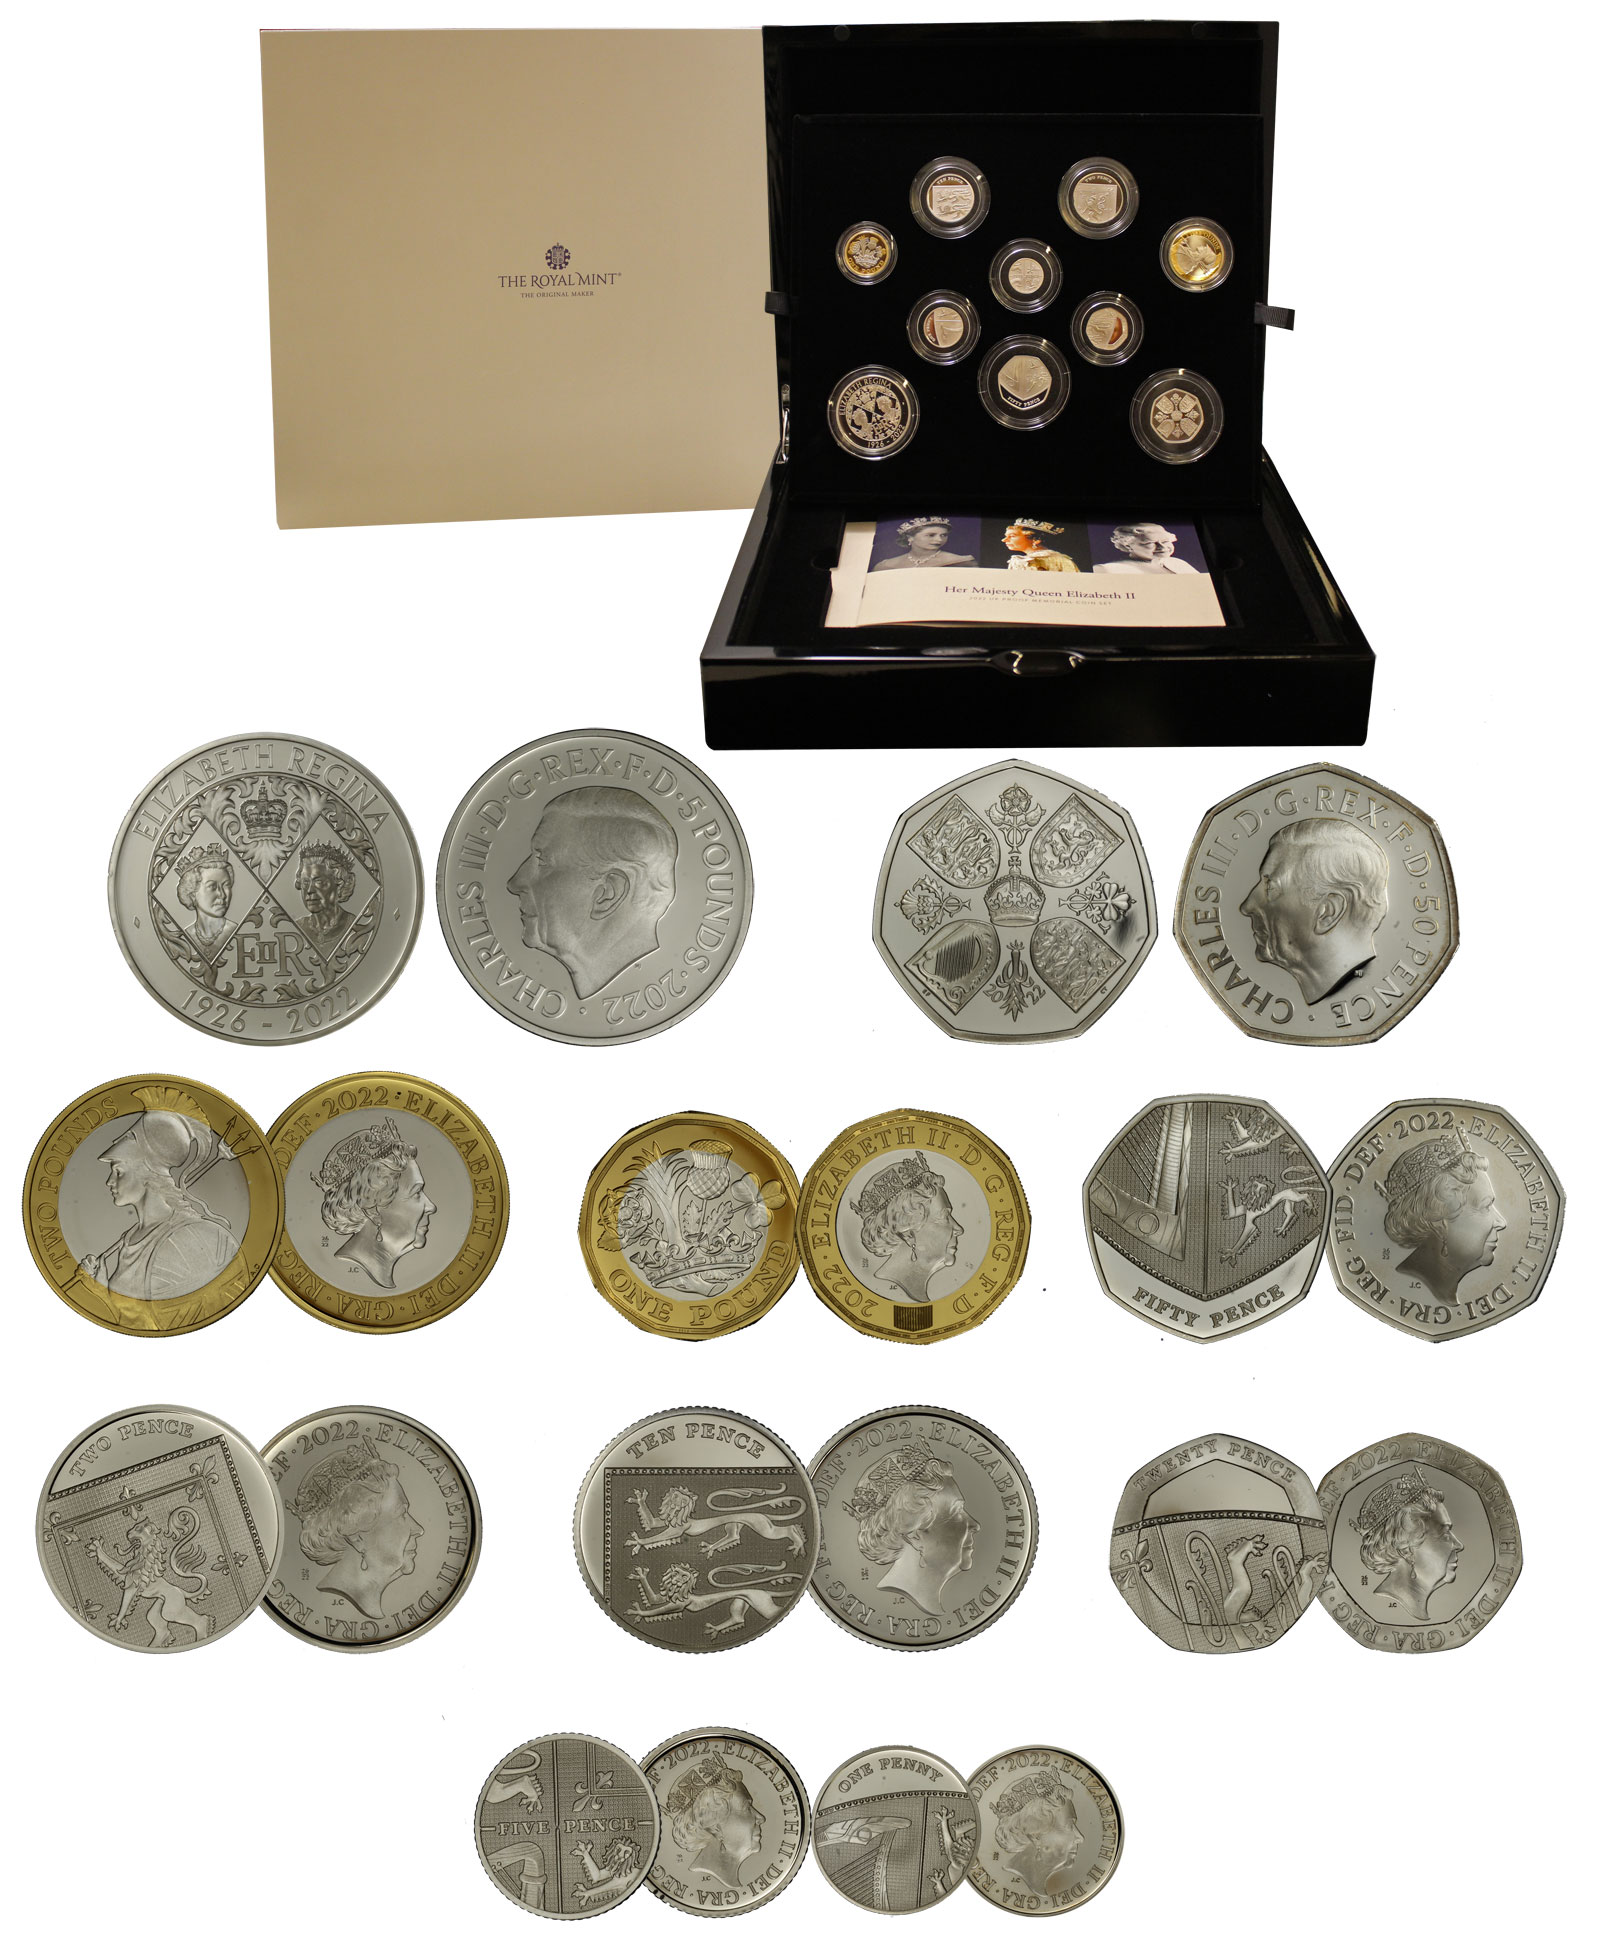 Cardinale Collezione royal 10 c.credito con pattella e porta monete